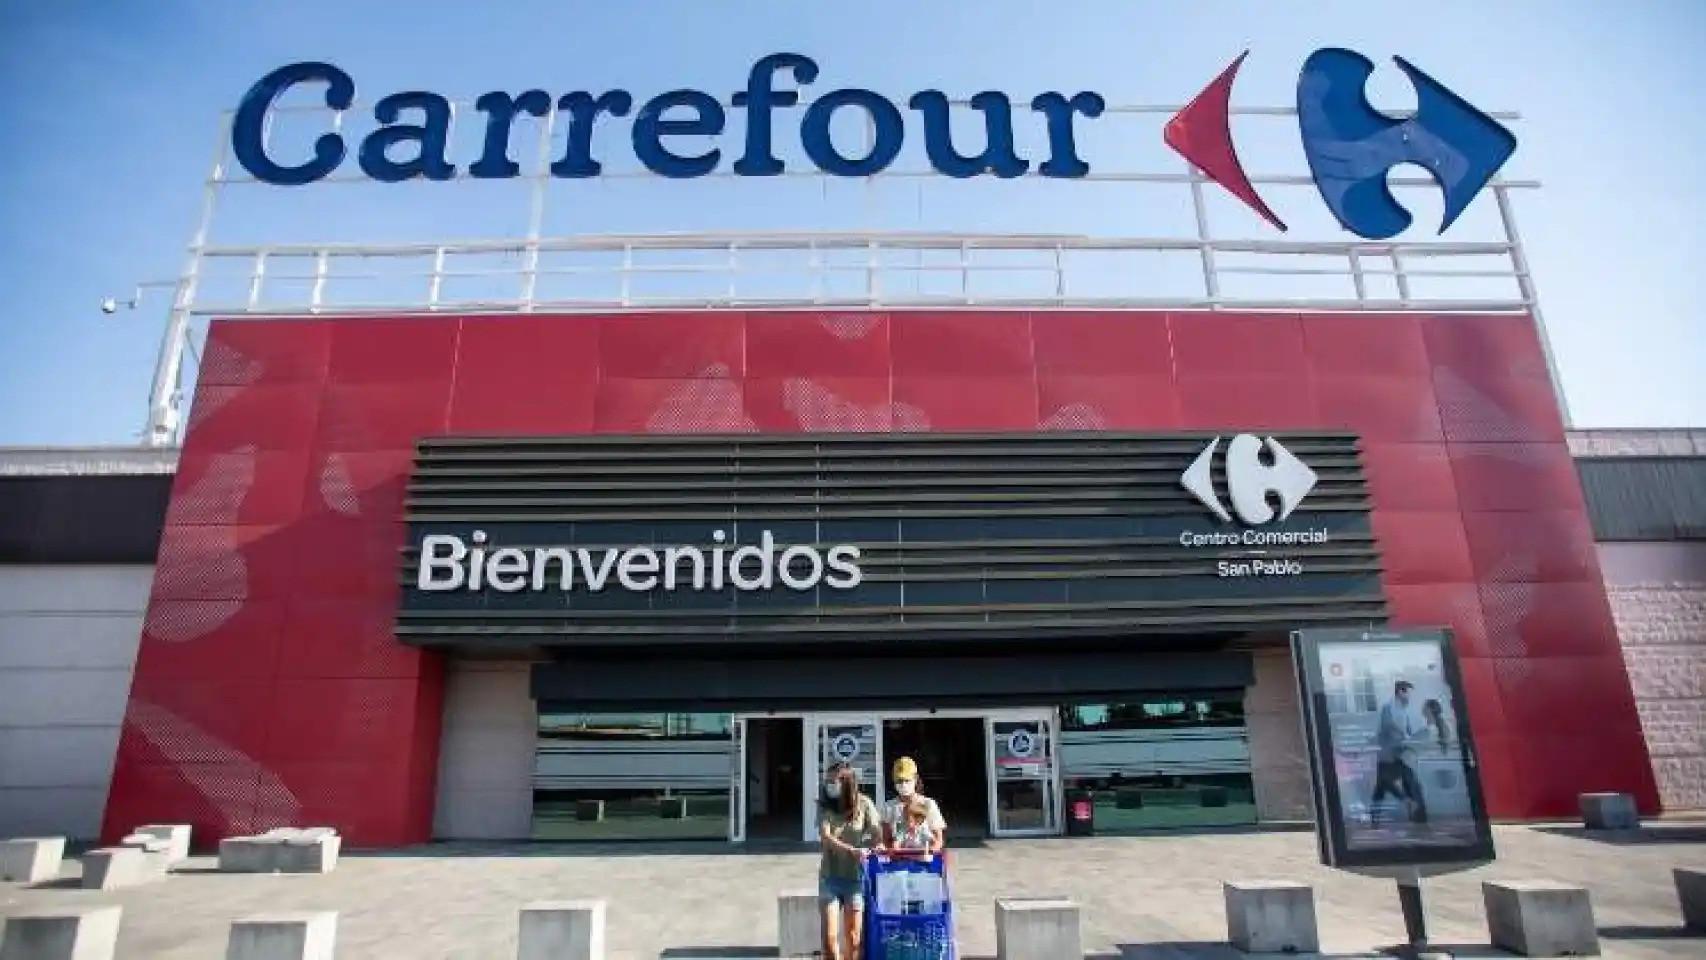 Carrefour liquida el reloj deportivo más barato de su web: solo 12 euros